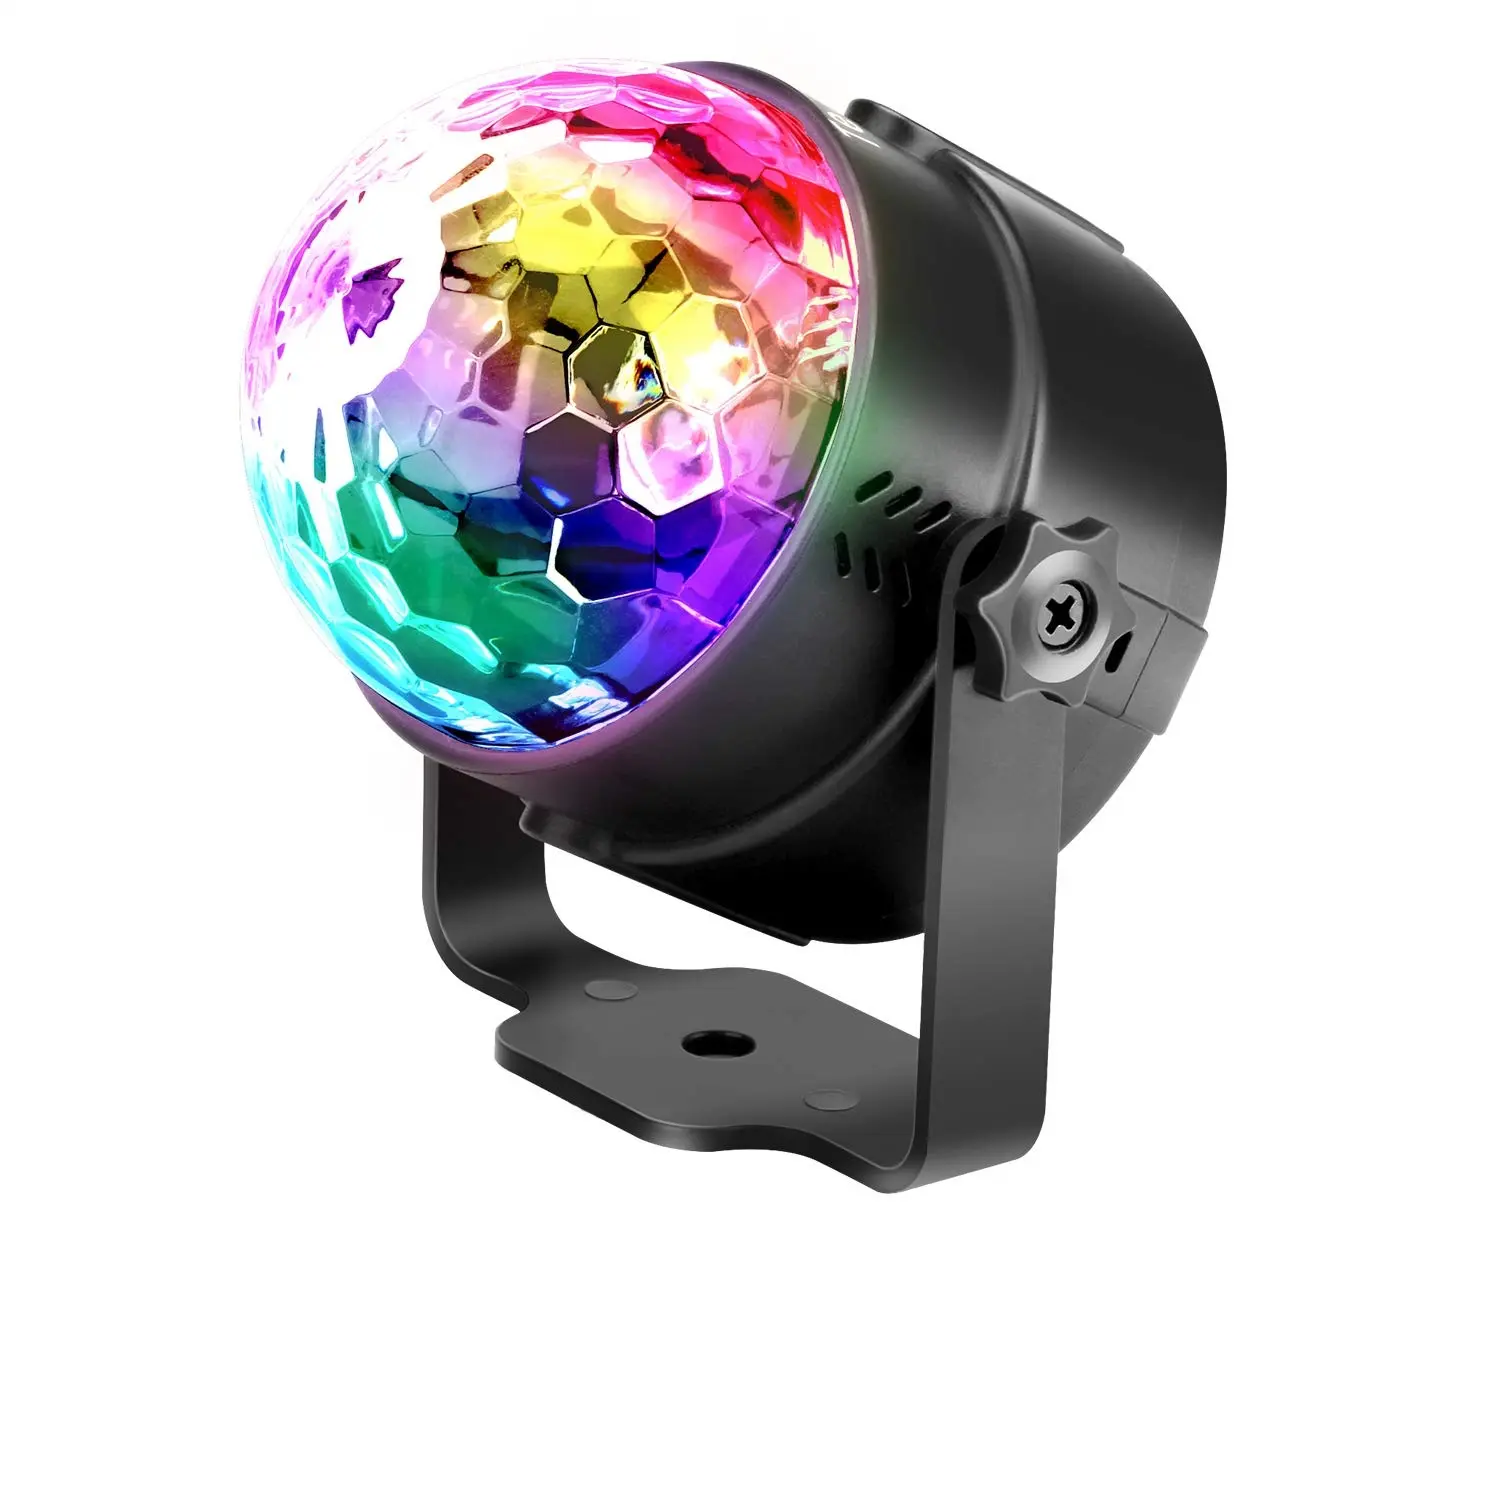 ディスコボールライト音楽DJ照明マジック回転LEDステージライト誕生日パーティーパブ屋内装飾